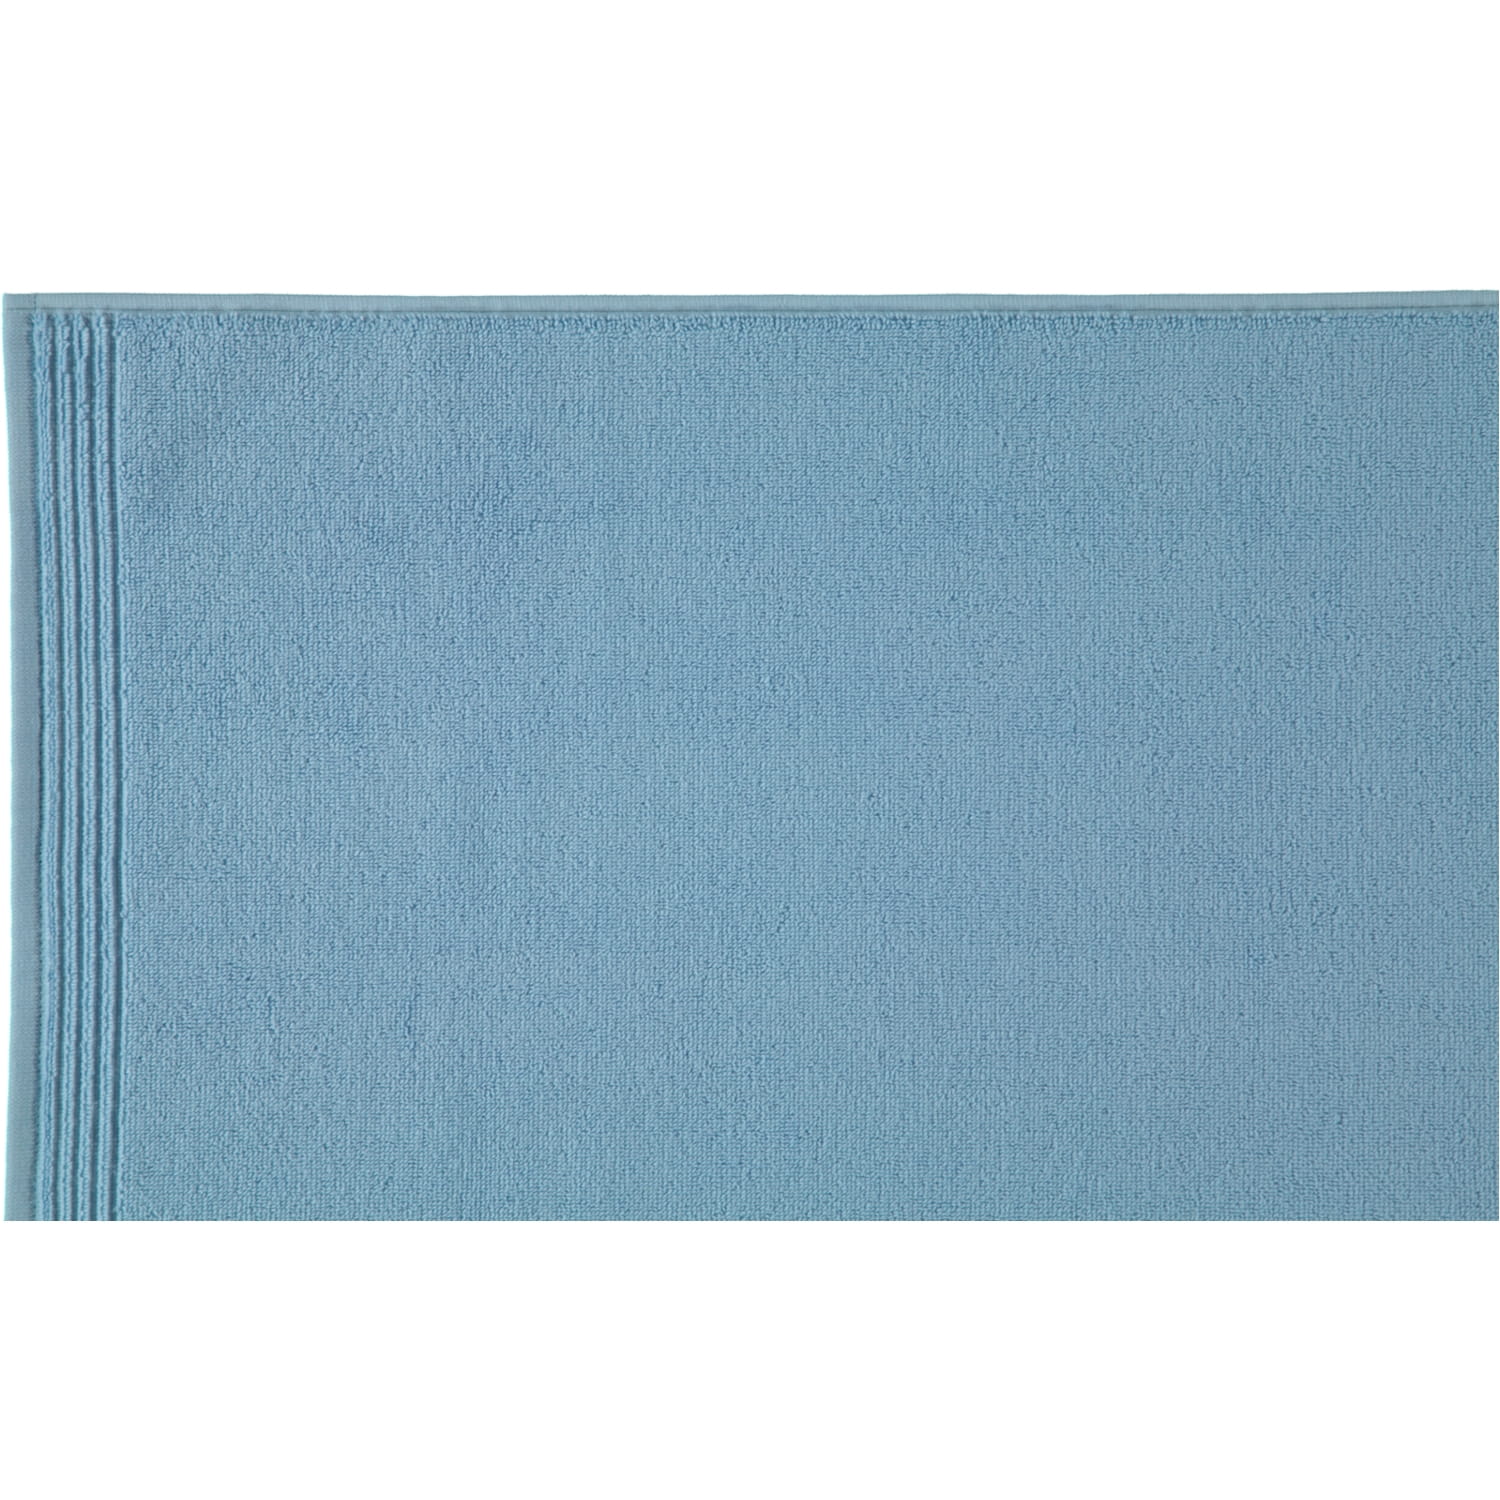 Möve - Superwuschel - Farbe: aquamarine - 577 (0-1725/8775) - Handtuch  60x110 cm | Möve Handtücher | Möve | Marken